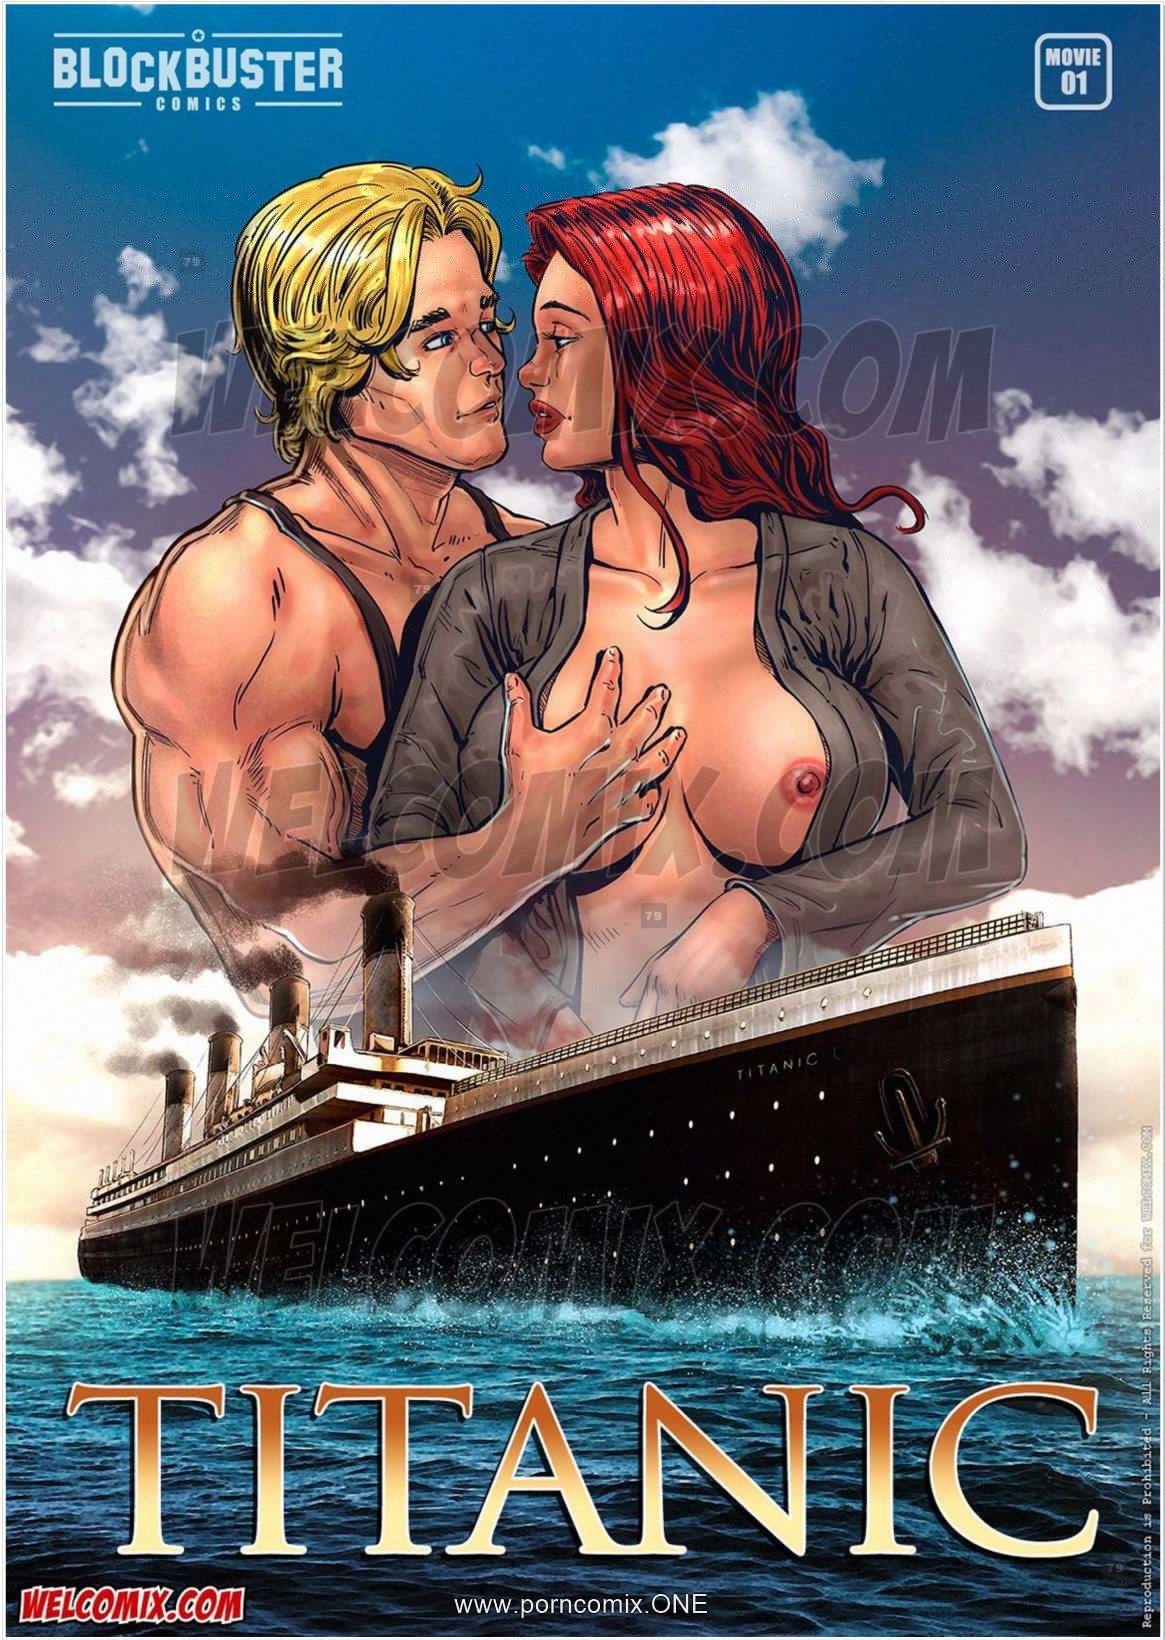 Titanic- Blockbuster page 1